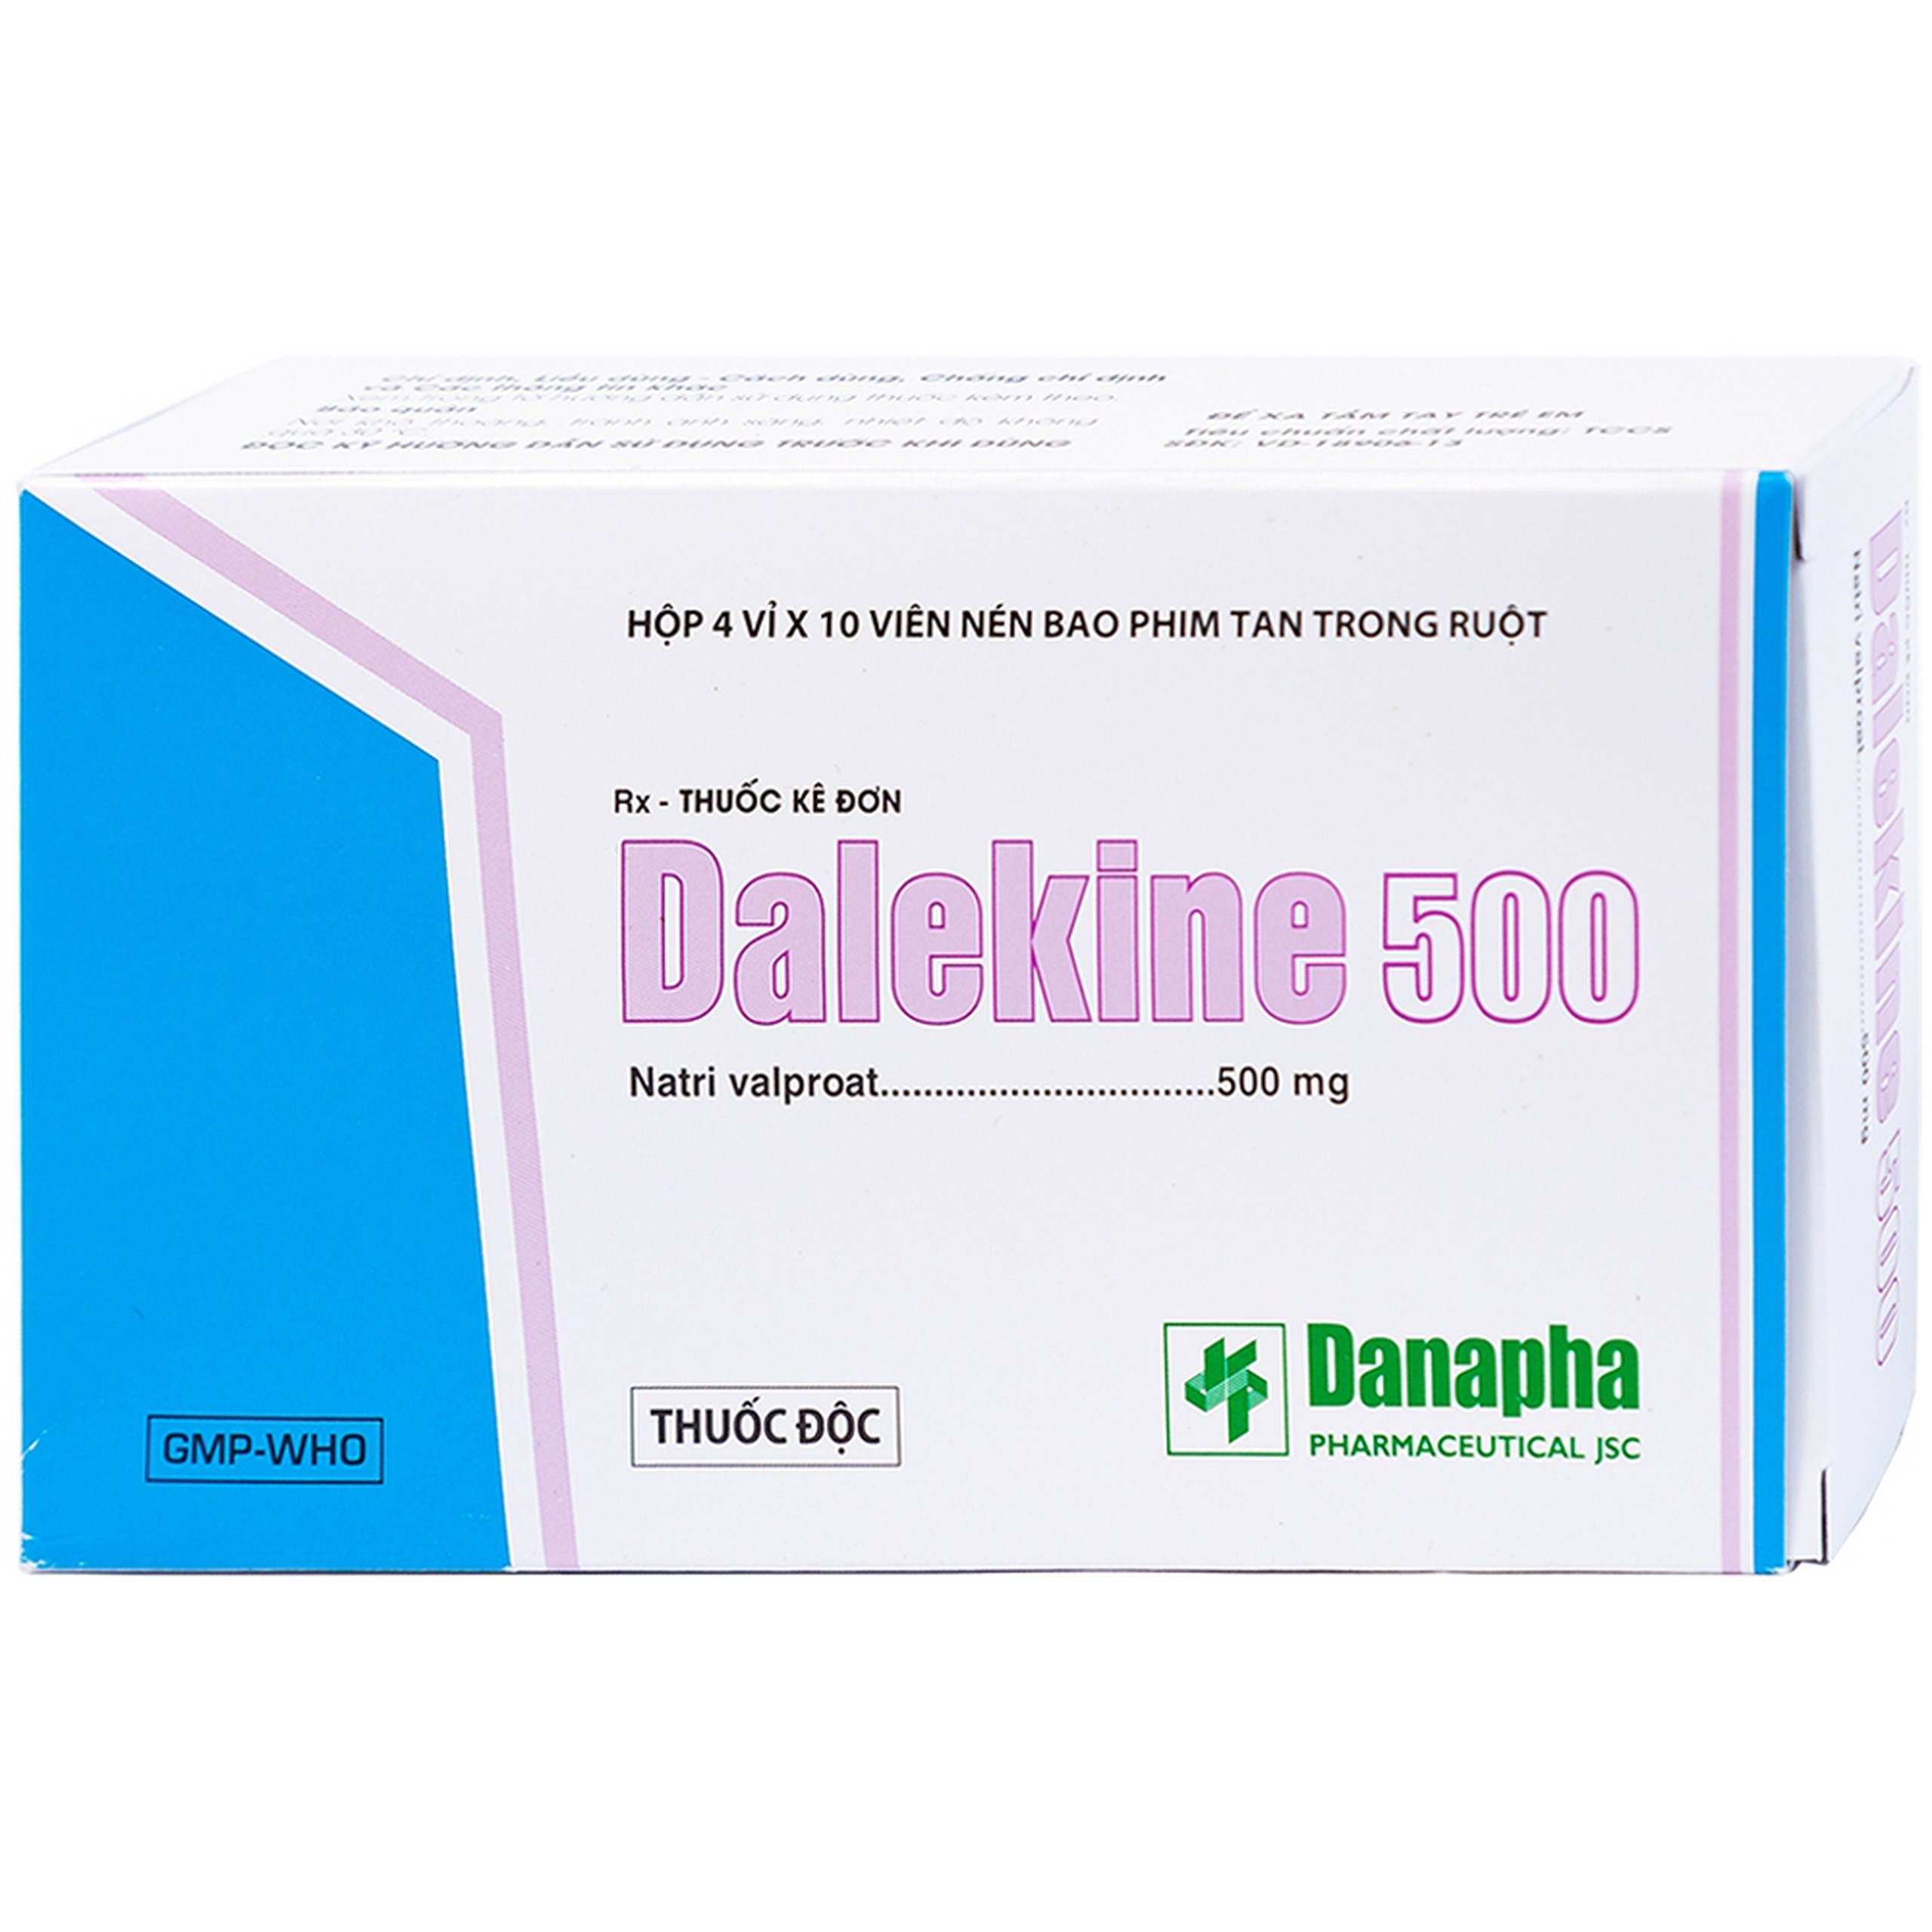 Thuốc Dalekine 500mg Danapha điều trị động kinh (4 vỉ x 10 viên)